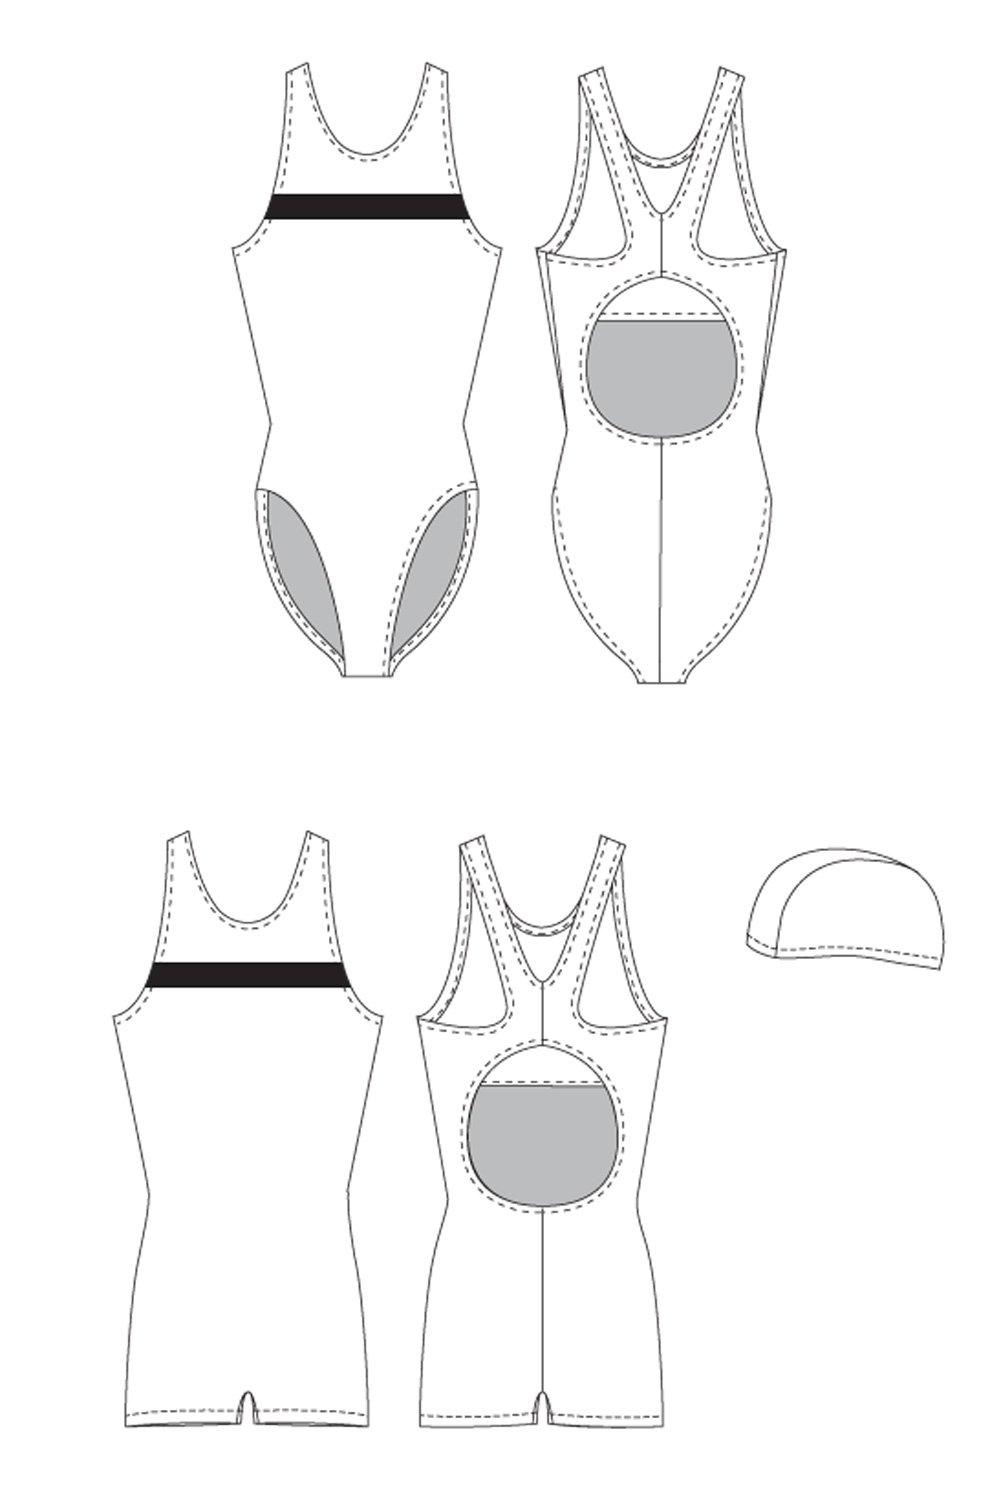 Jalie 971 - Swimsuit, Leg Suit and Swim Cap Pattern